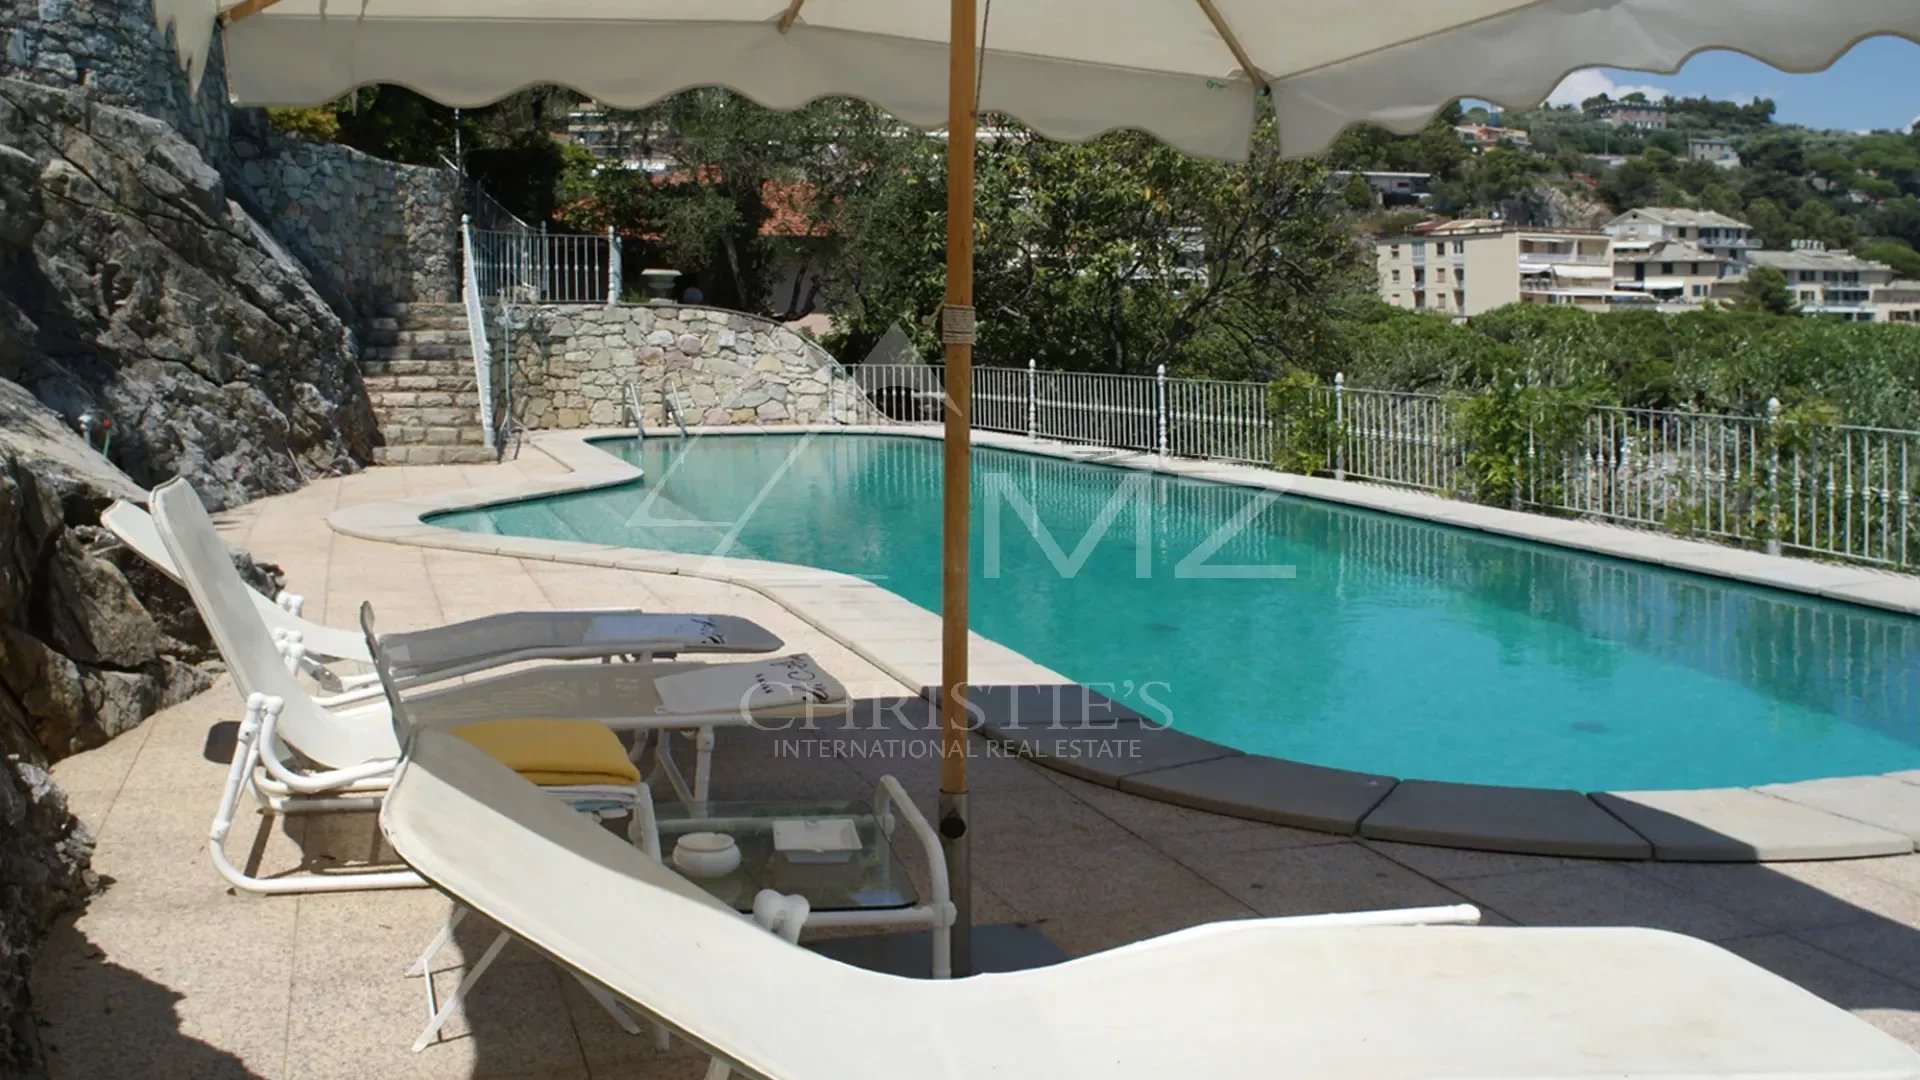 Villa historique de prestige avec dépendances, piscine et parkings, sur l'eau à Portovenere